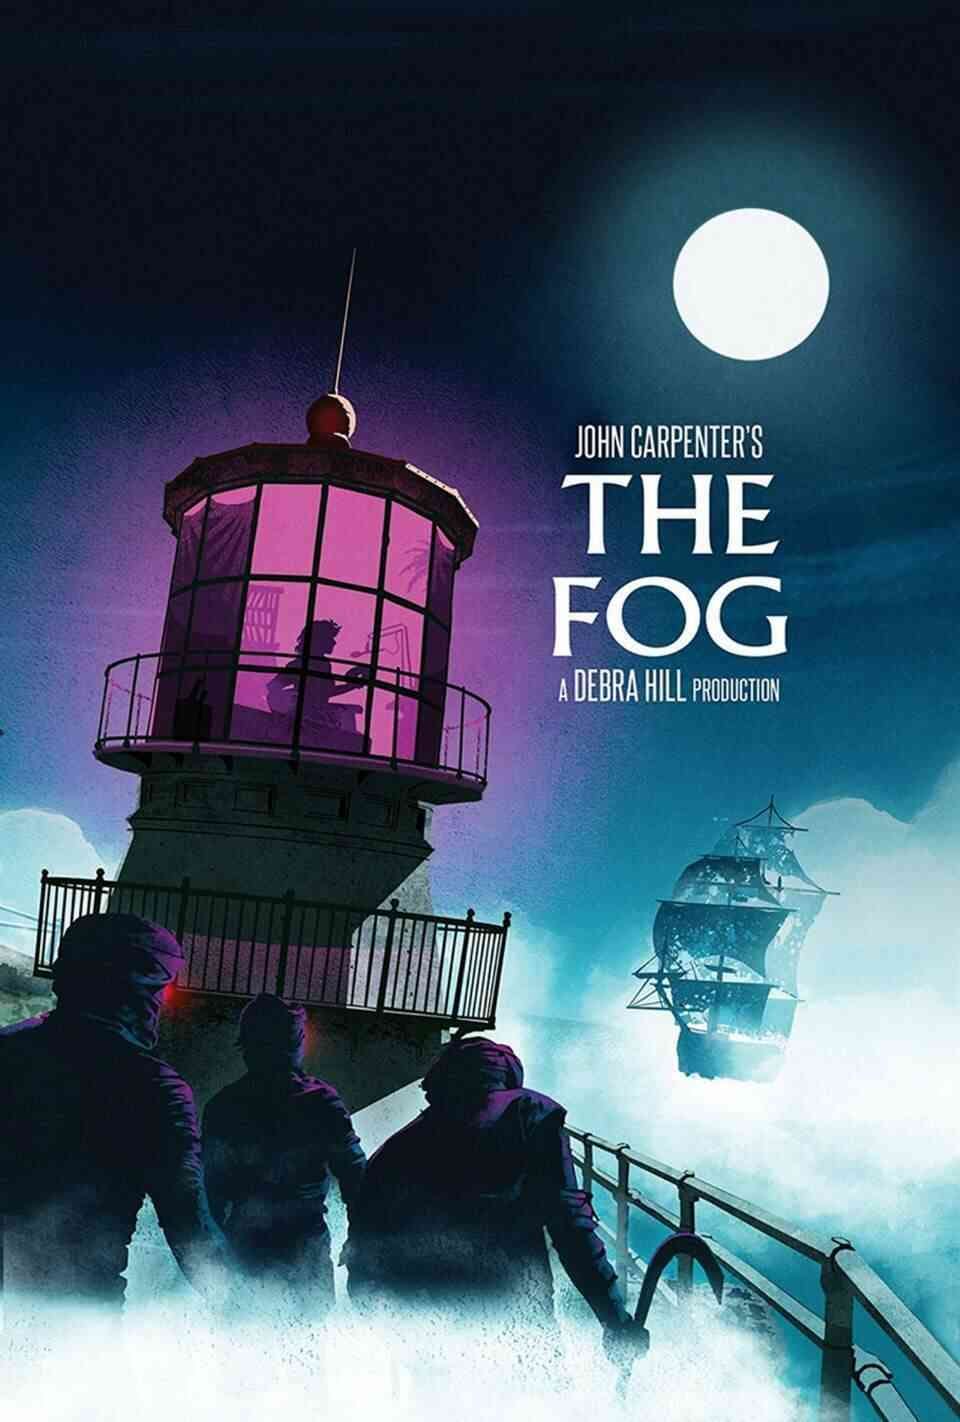 Read The Fog screenplay.